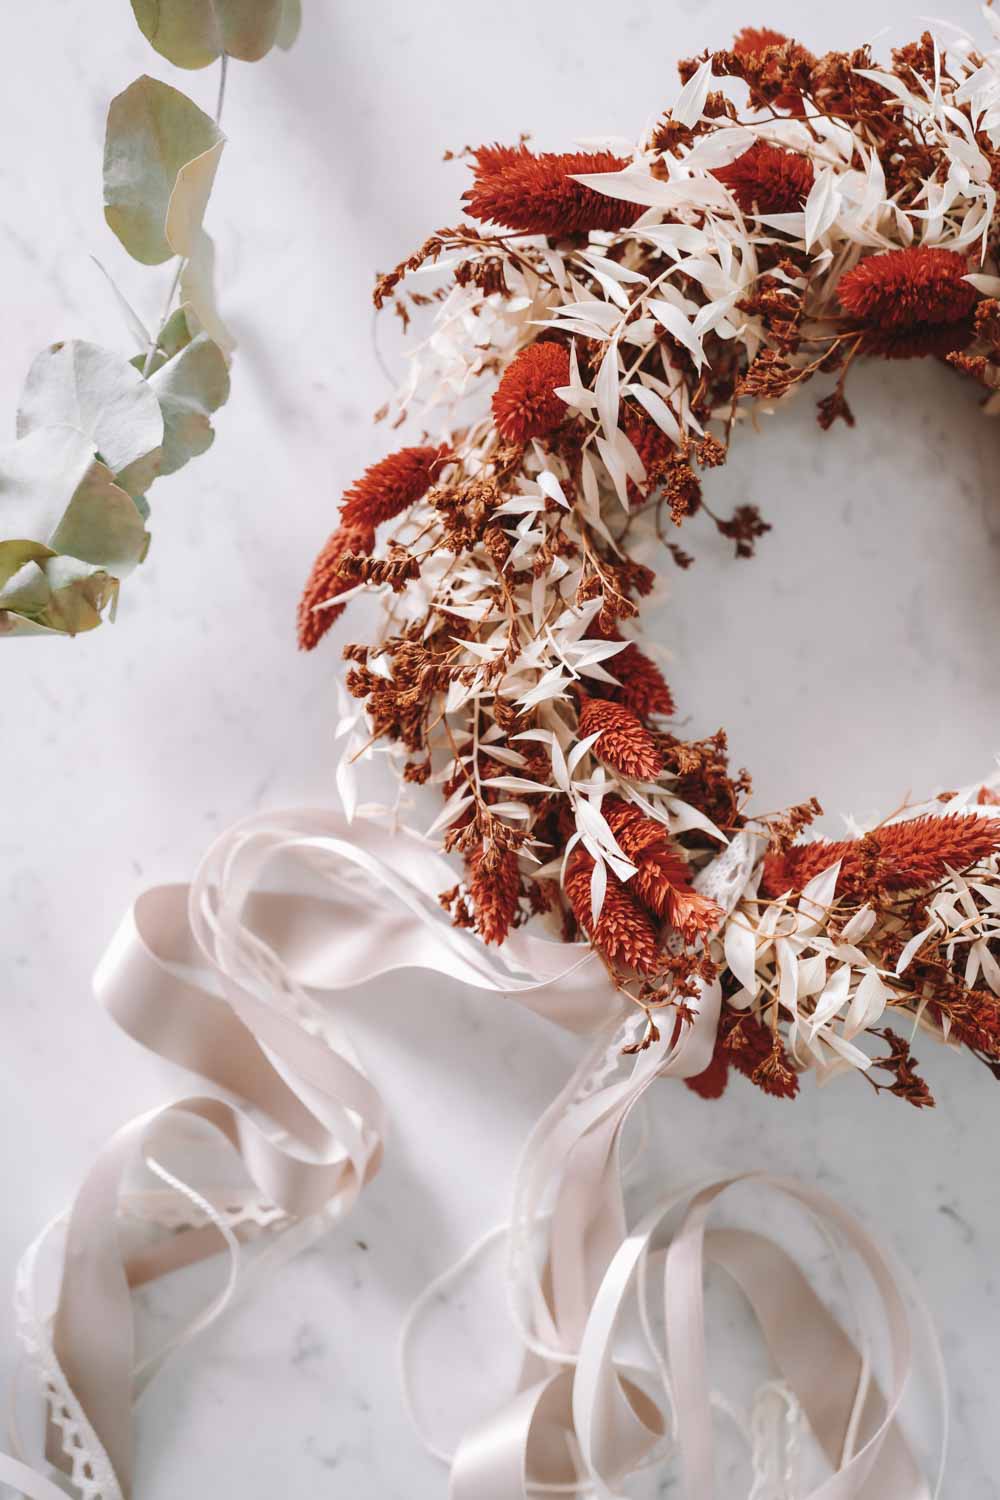 Dried Flower Wreaths – We Are Flowergirls